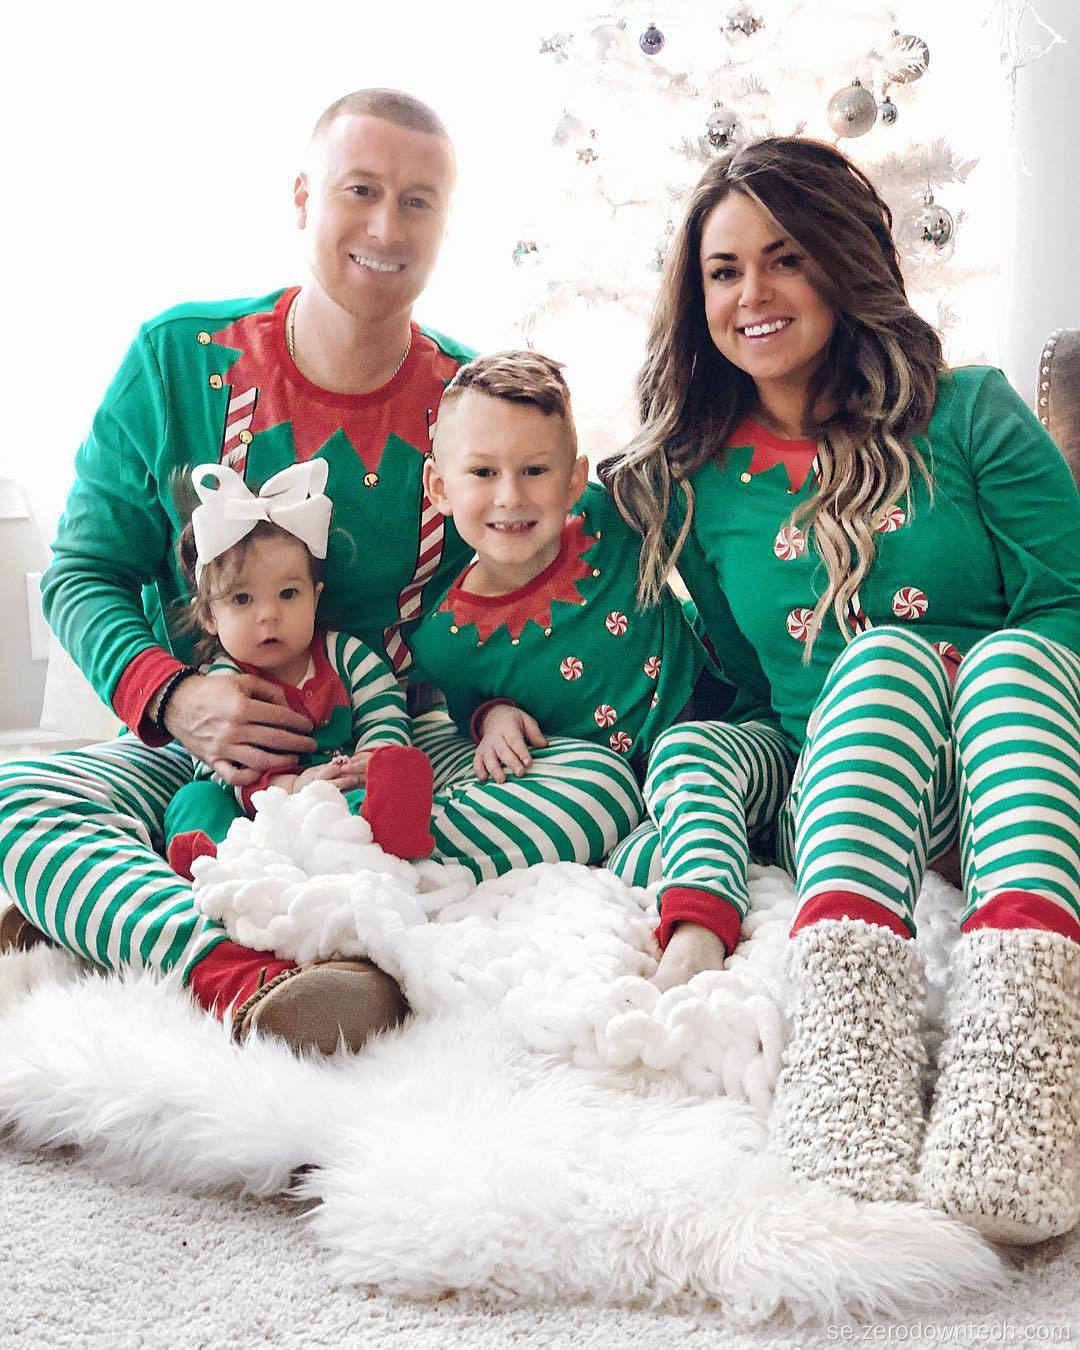 Merry Christmas Printing Family Isbjörn julpyjamas